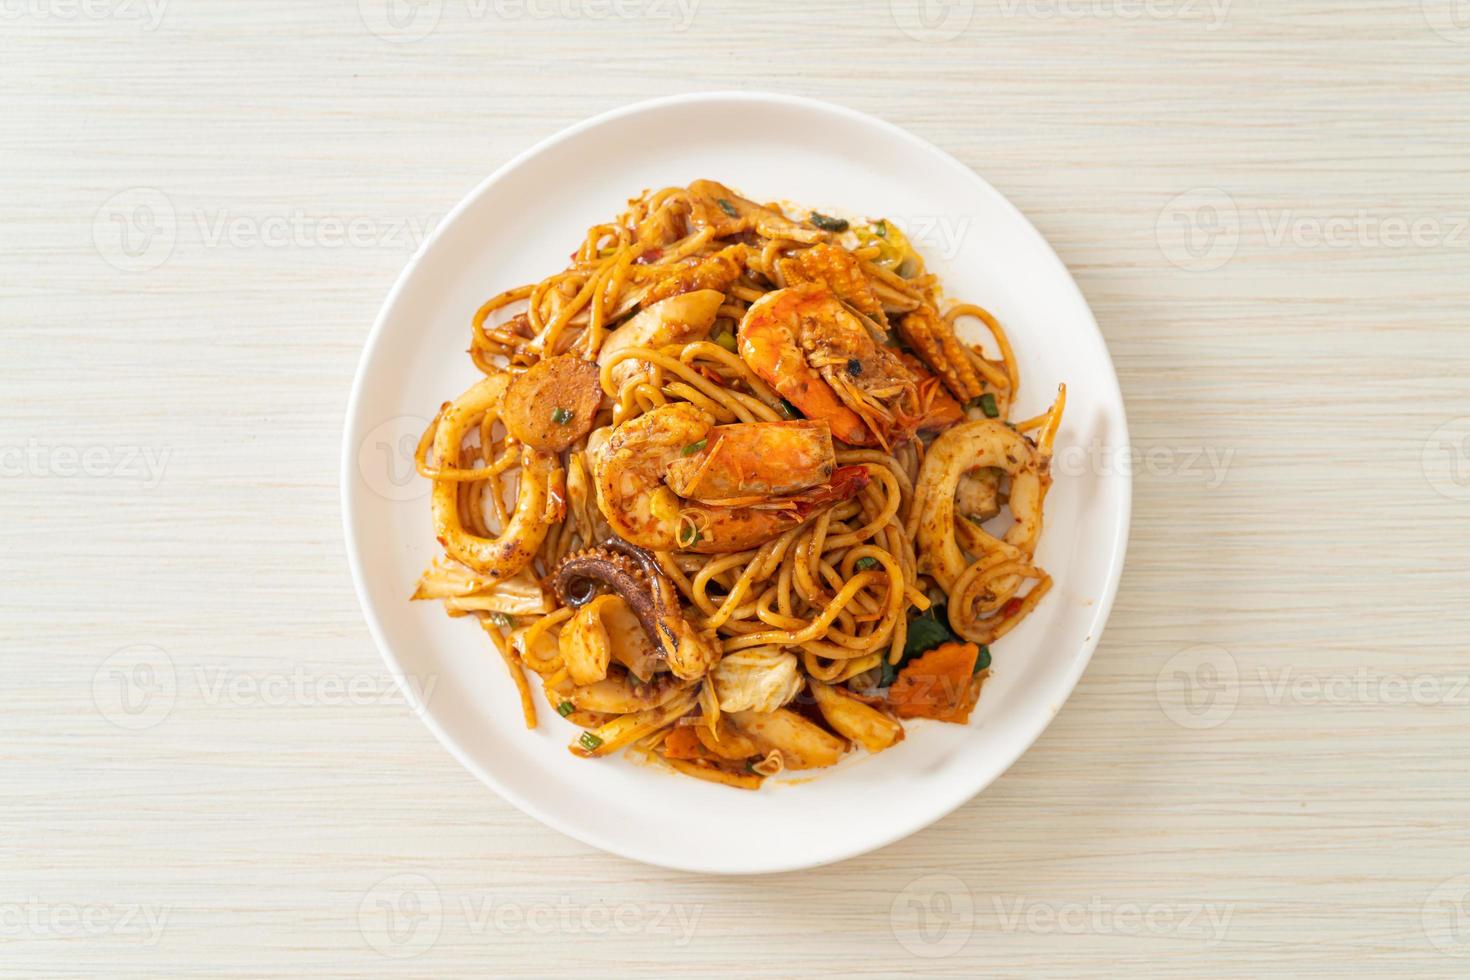 spaghetti secchi ai frutti di mare saltati in padella tom yum - fusion food style foto